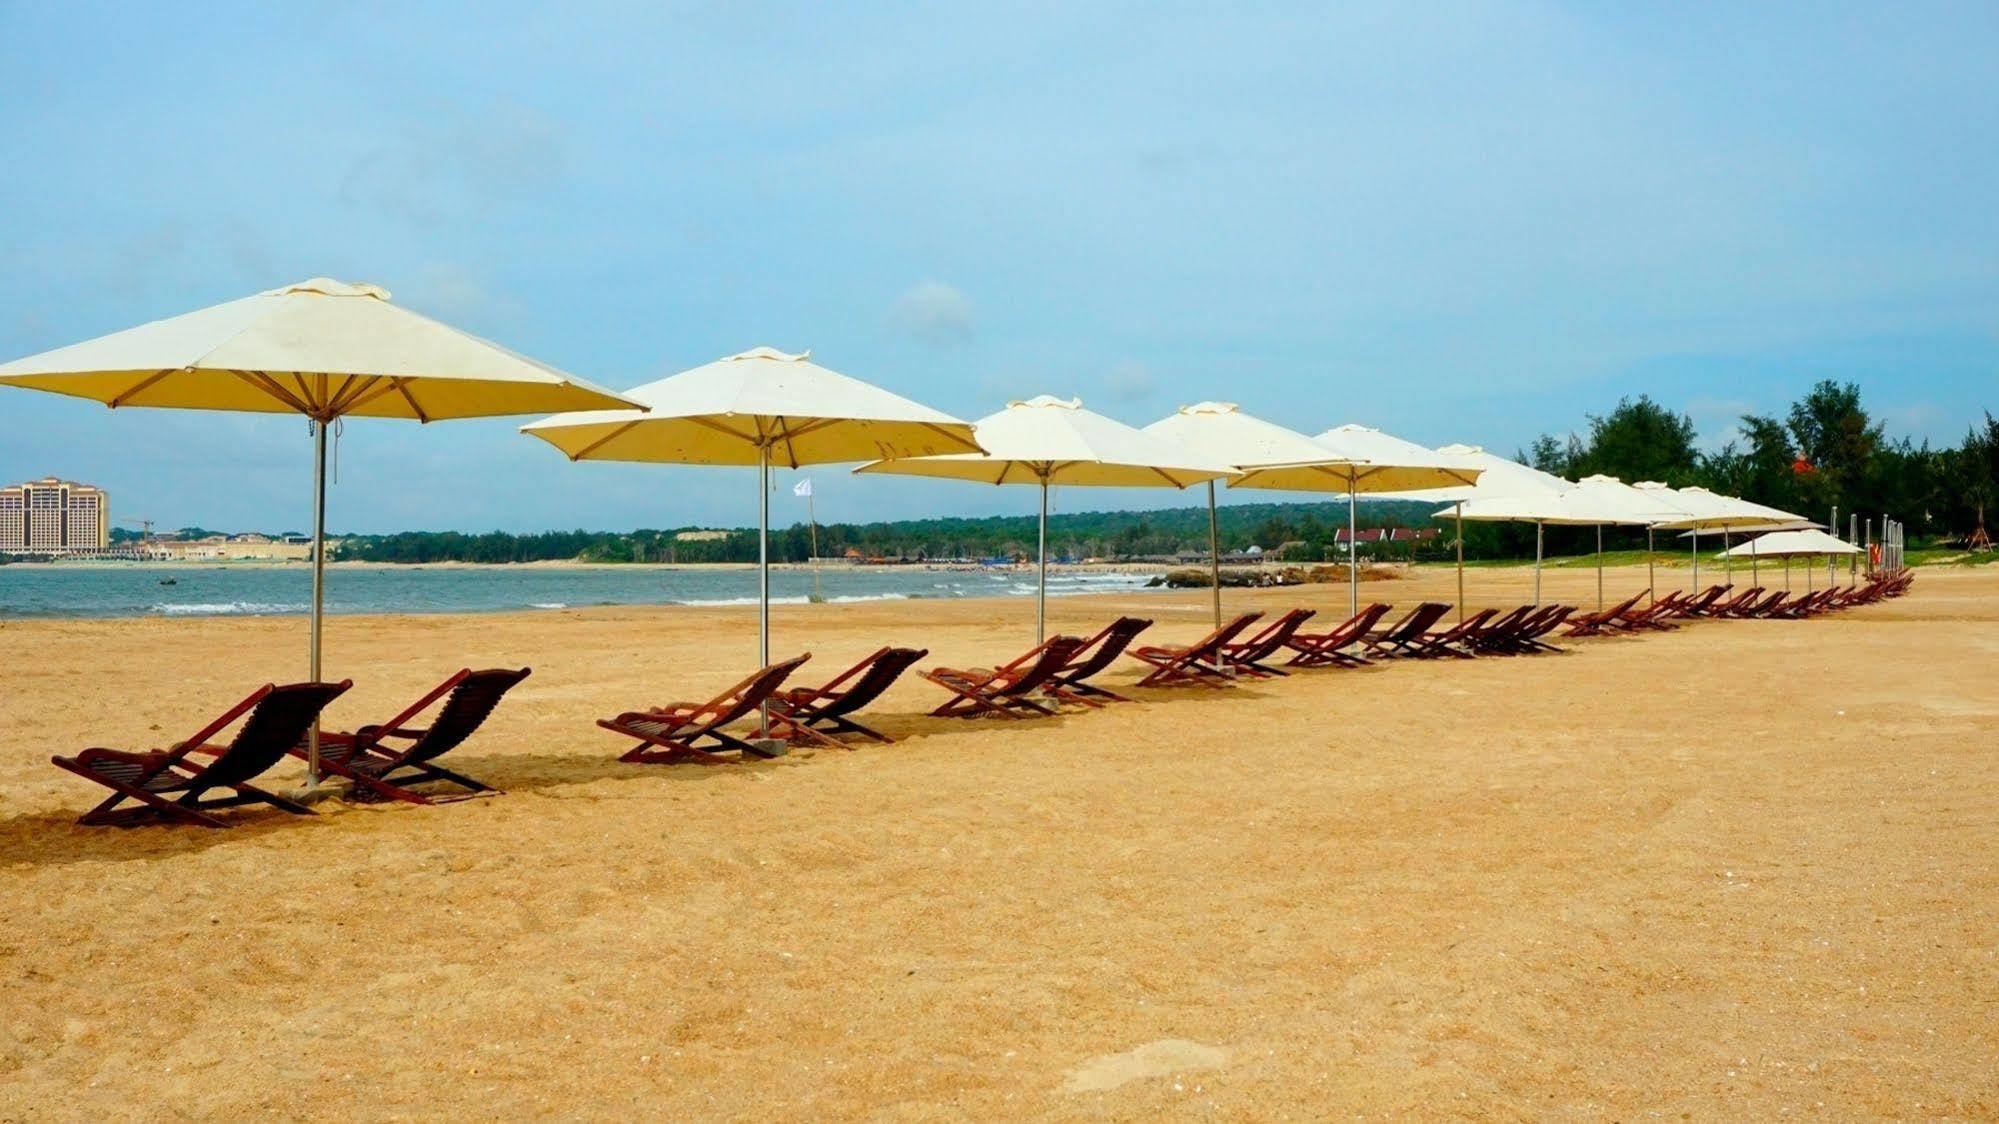 Seava Ho Tram Beach Resort Ho Coc Exterior foto